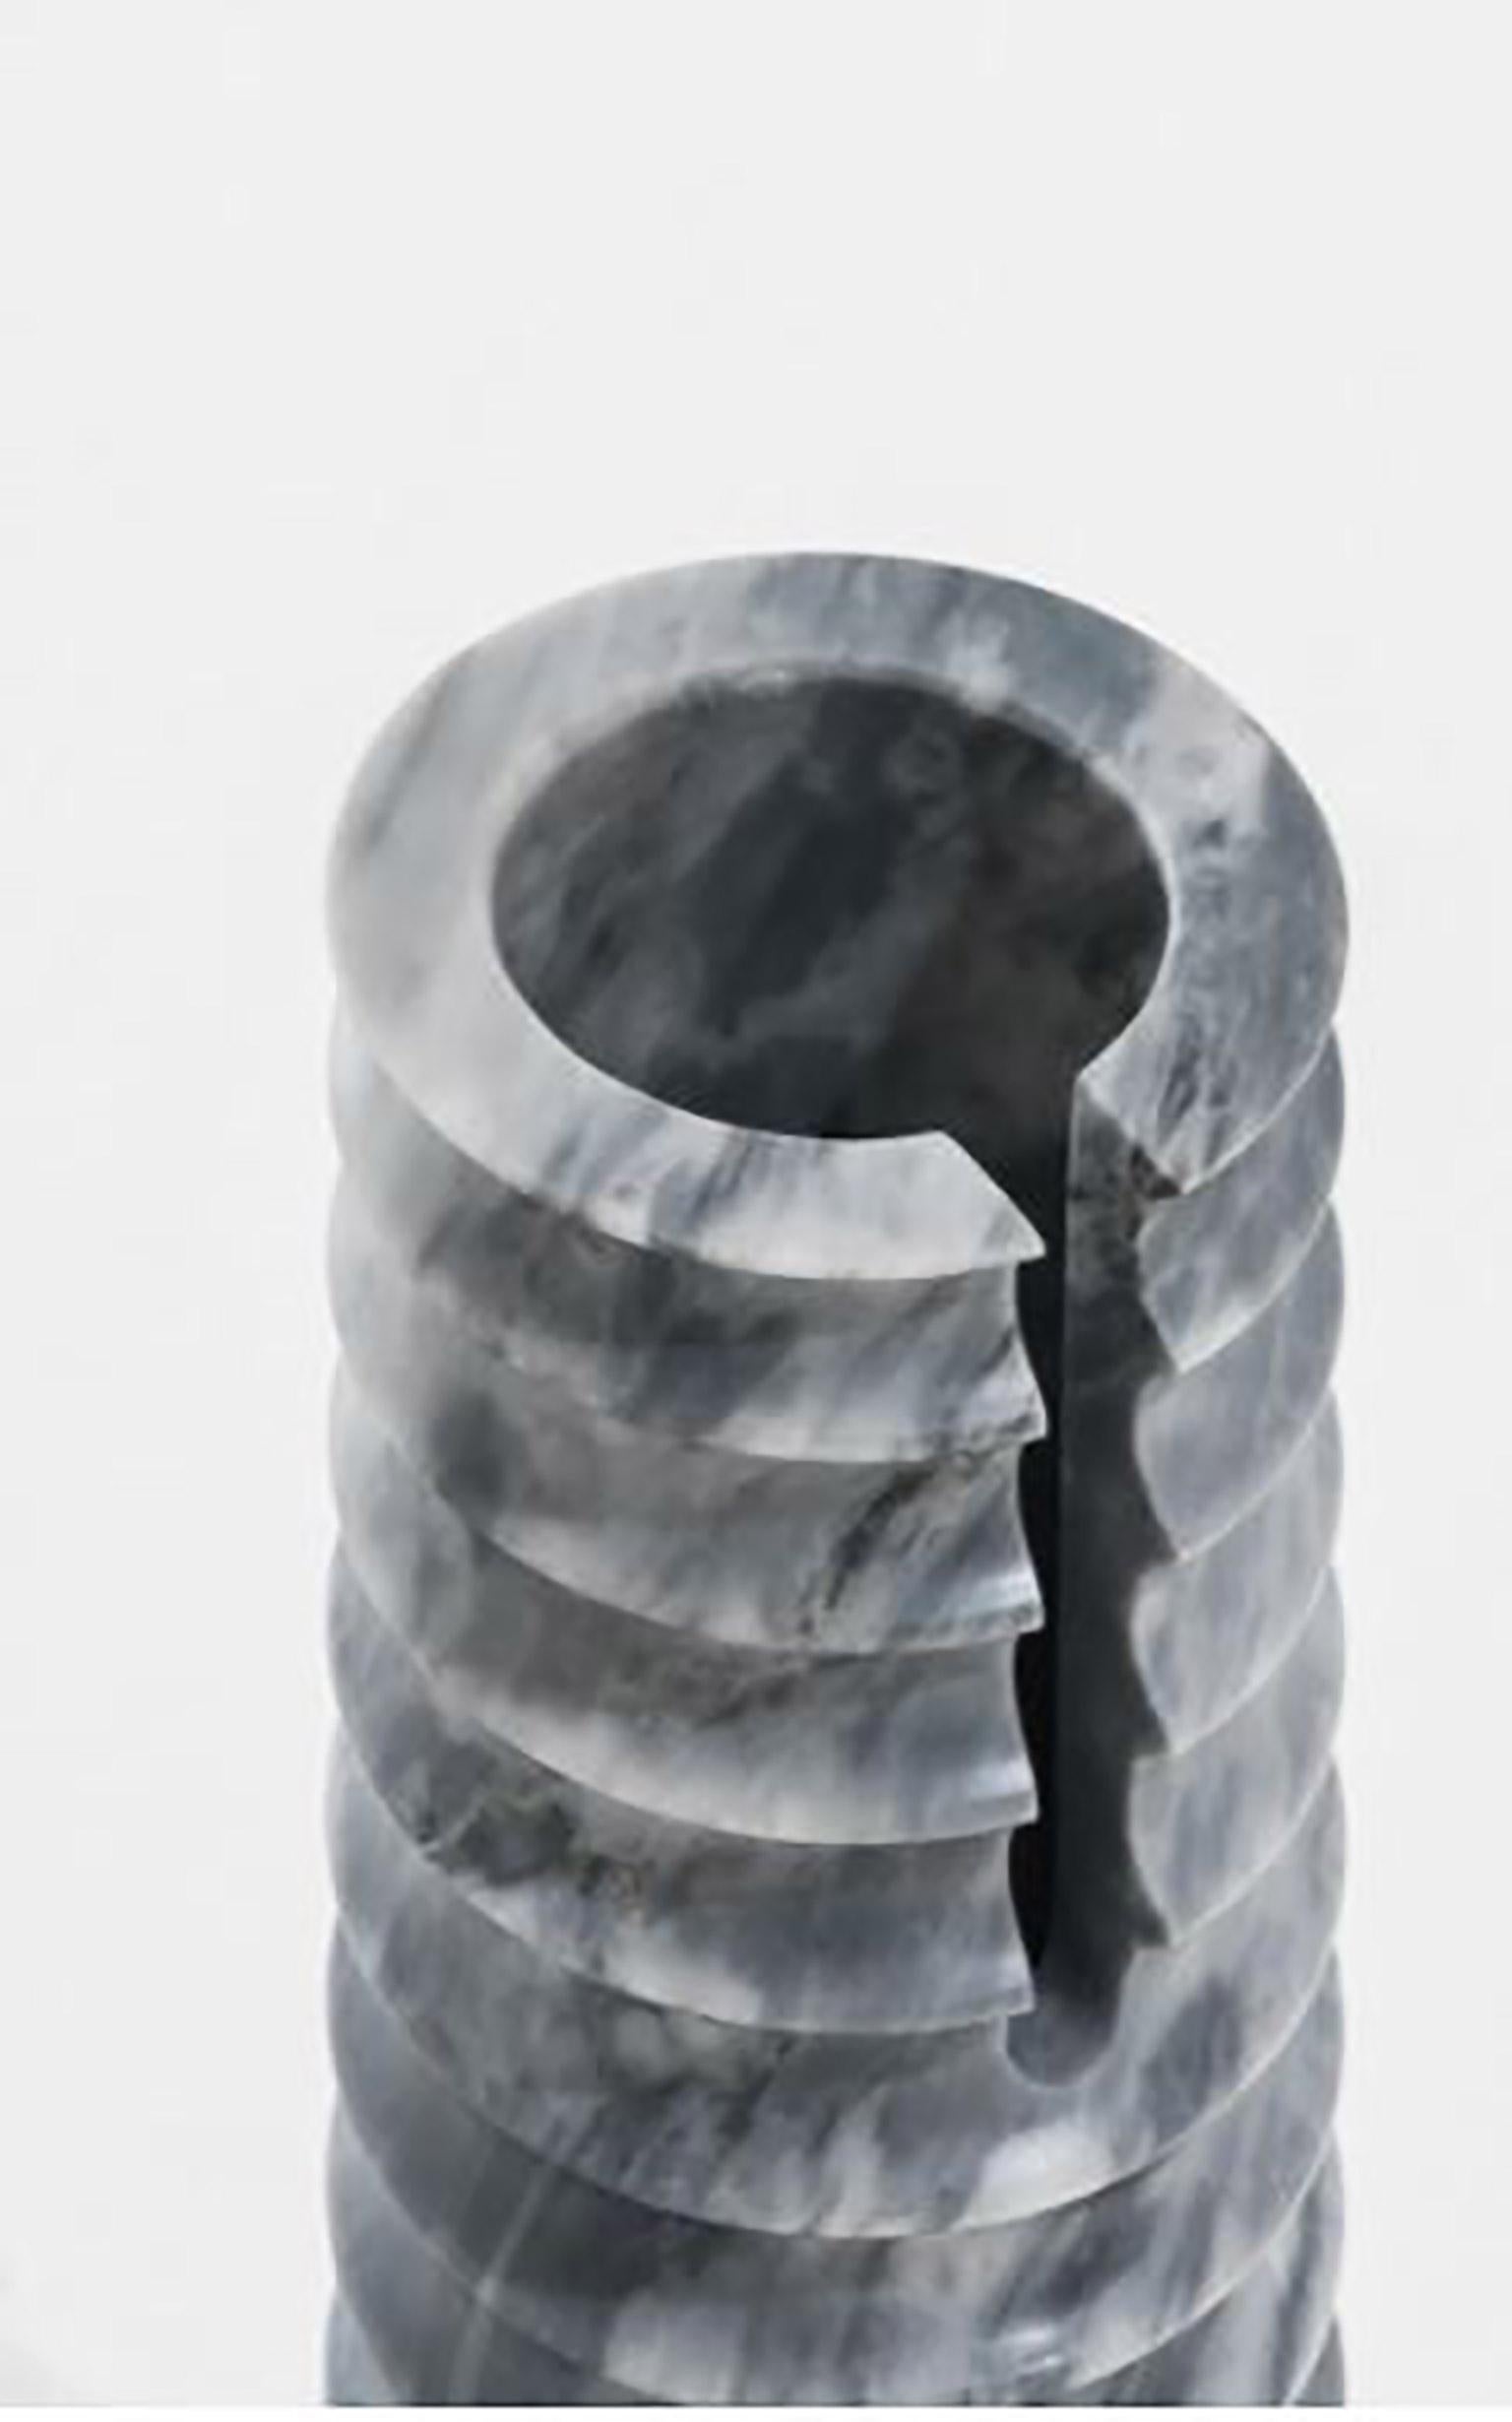 Vase géométrique sculptural en marbre Sodalite, collection Simultanea. Les forces centripètes, centrifuges et de mouvement sont canalisées dans des formes en pierre. Une rotation sur l'axe devient un vase, tandis qu'une coupe inclinée suggère un